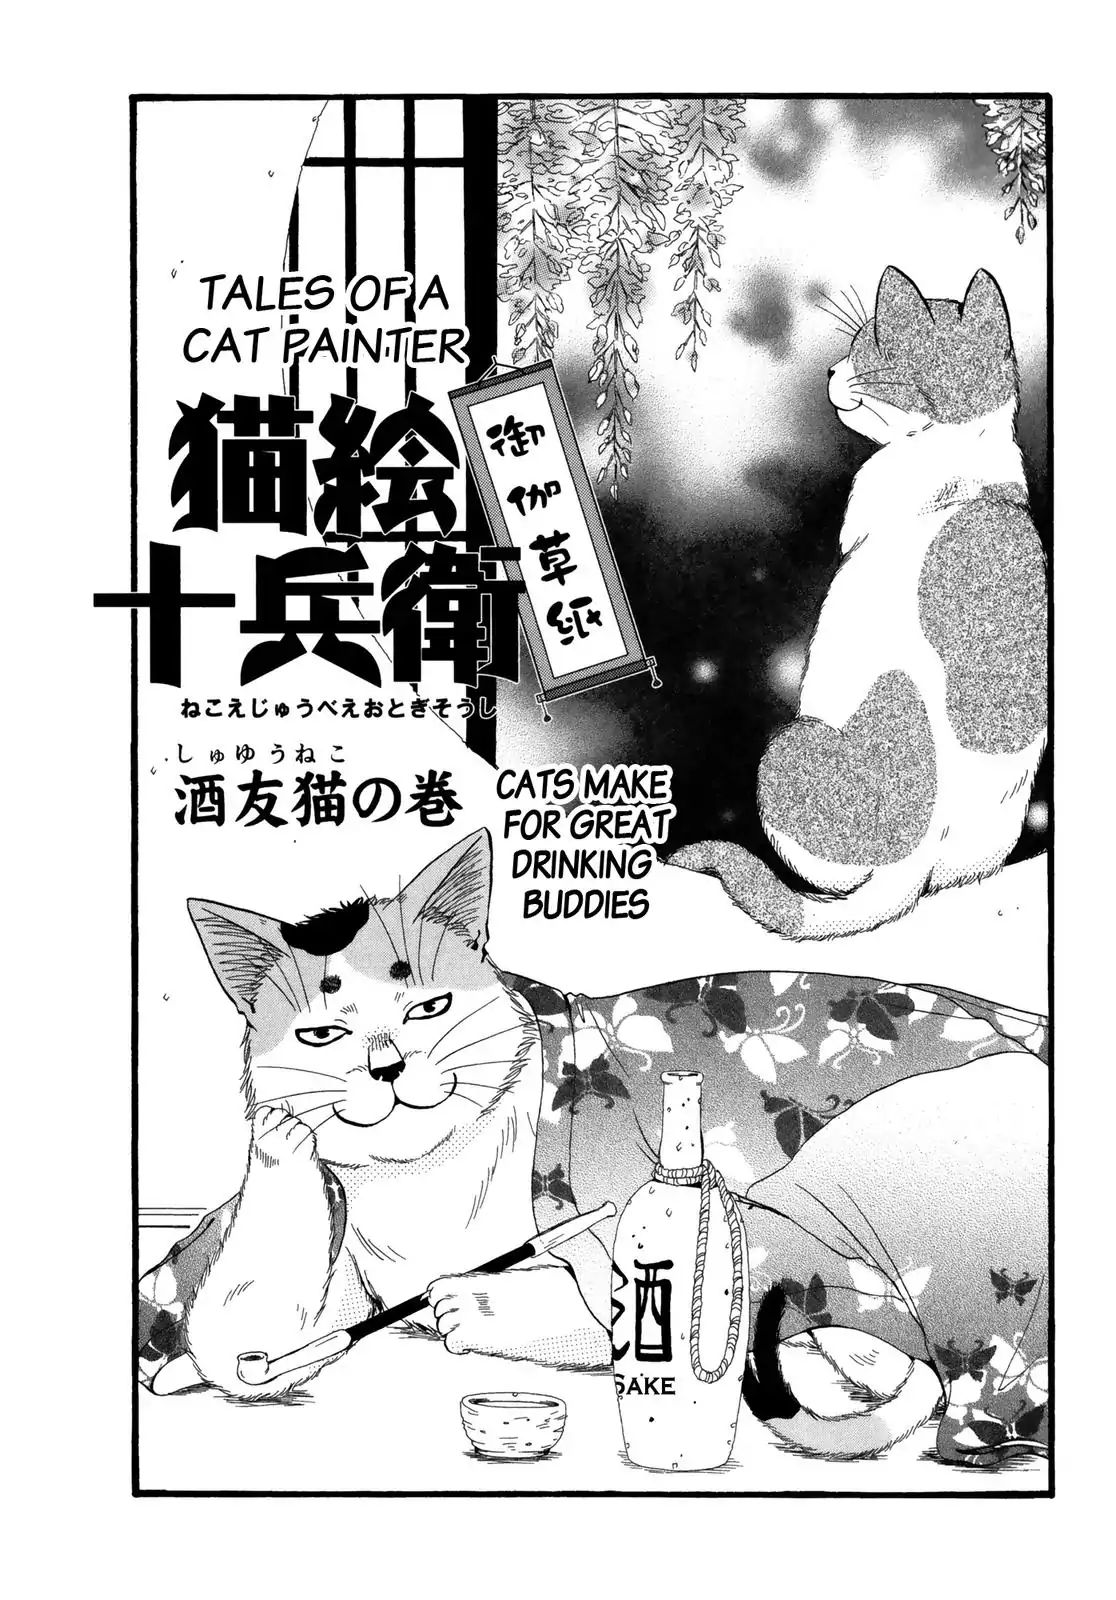 Edo Nekoe Jubei Otogizoshi Vol.5 CHAPTER 28: CATS MAKE FOR GREAT DRINKING BUDDIES